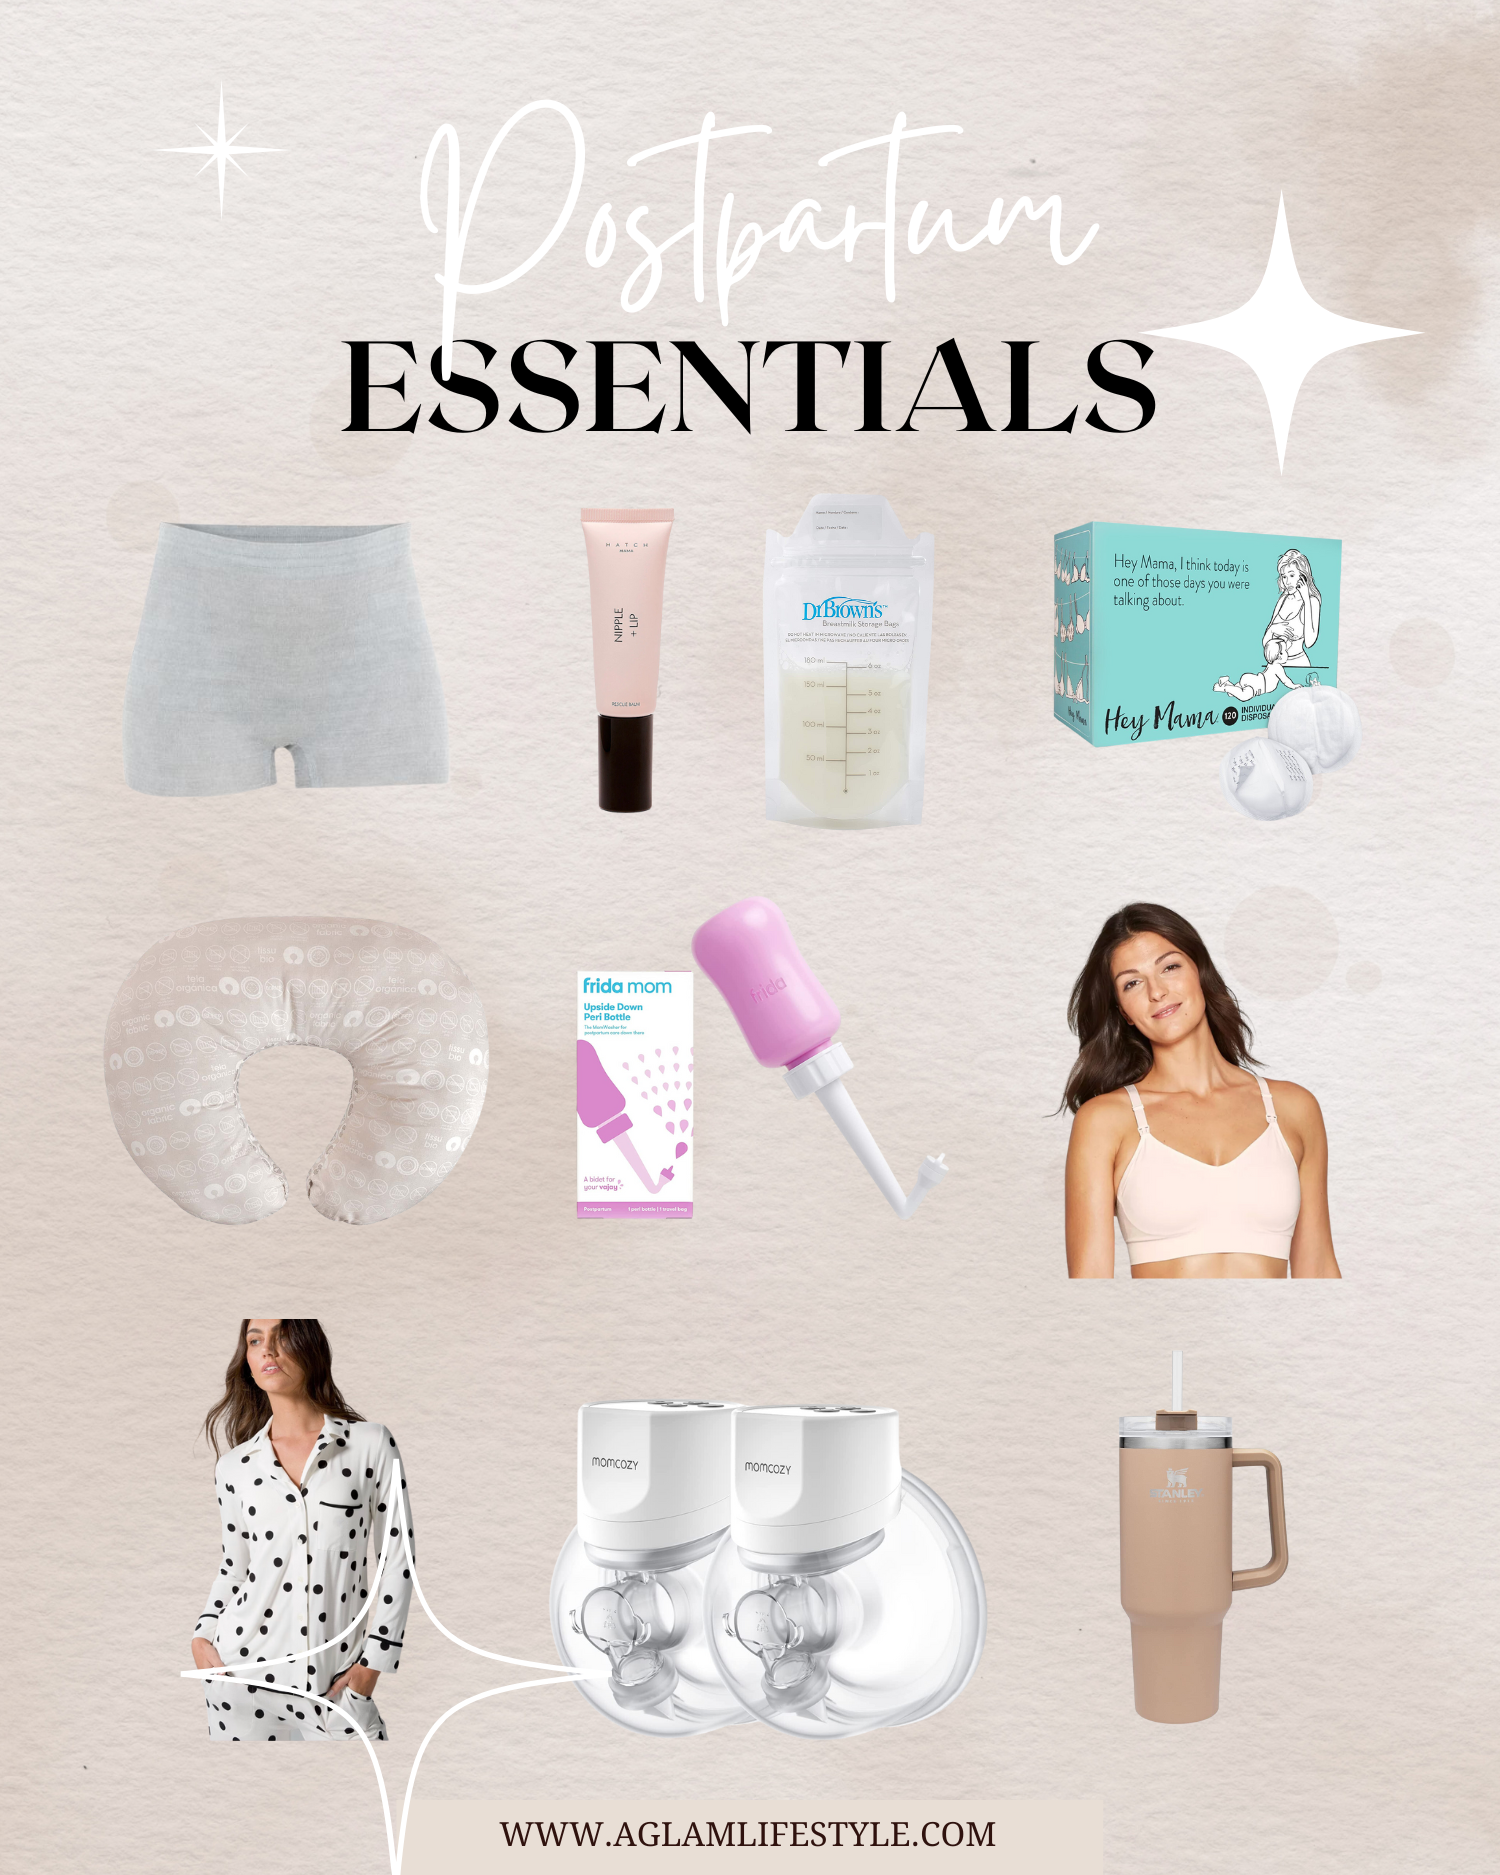 Postpartum Essentials